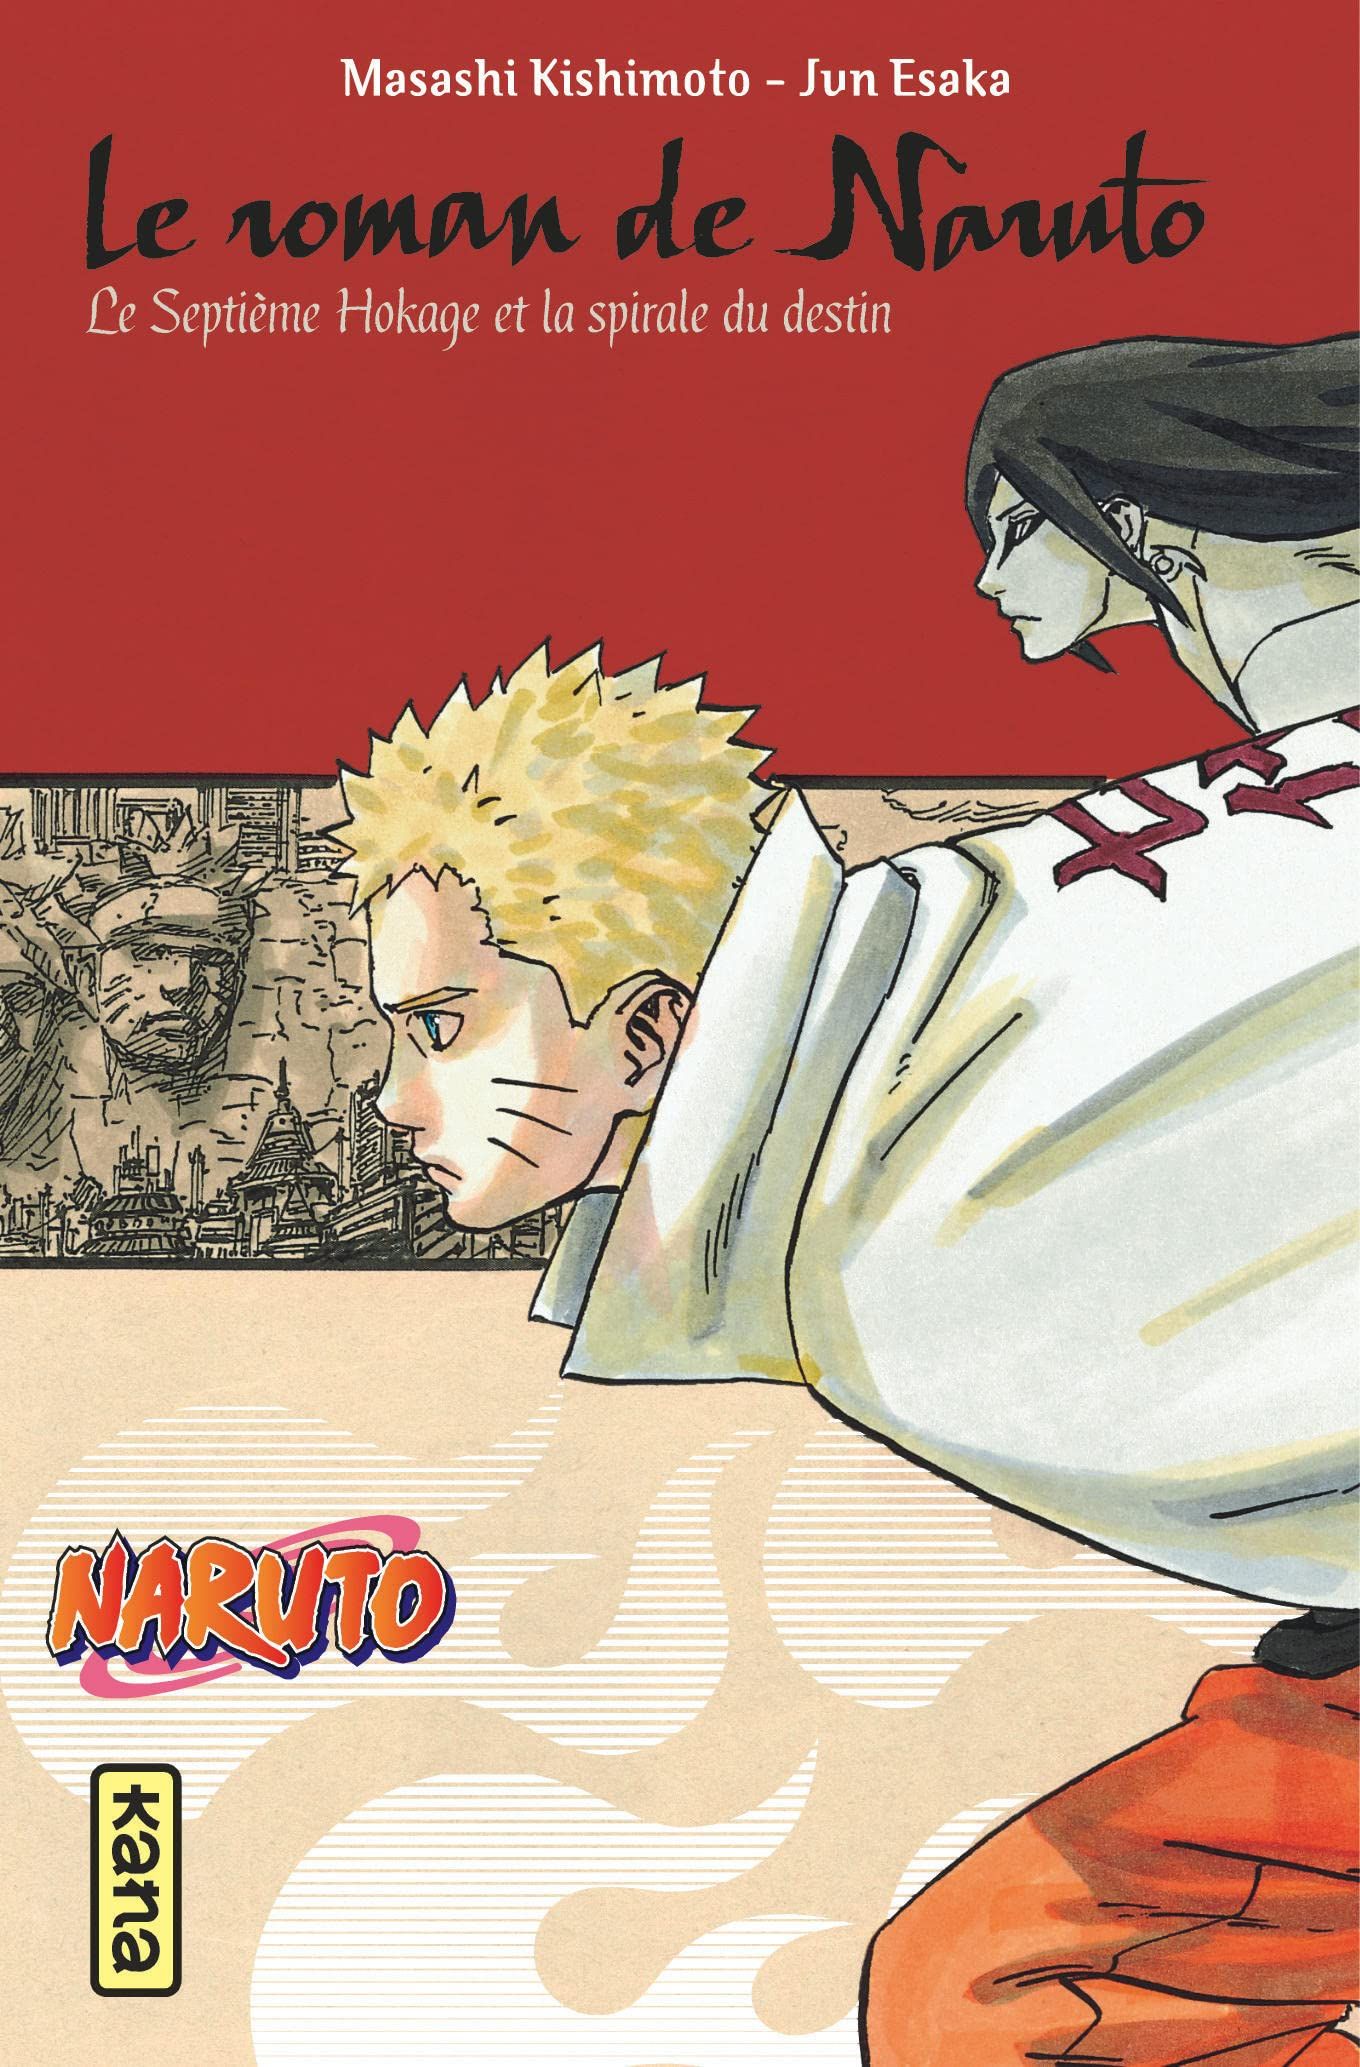 Naruto - Le roman de Naruto